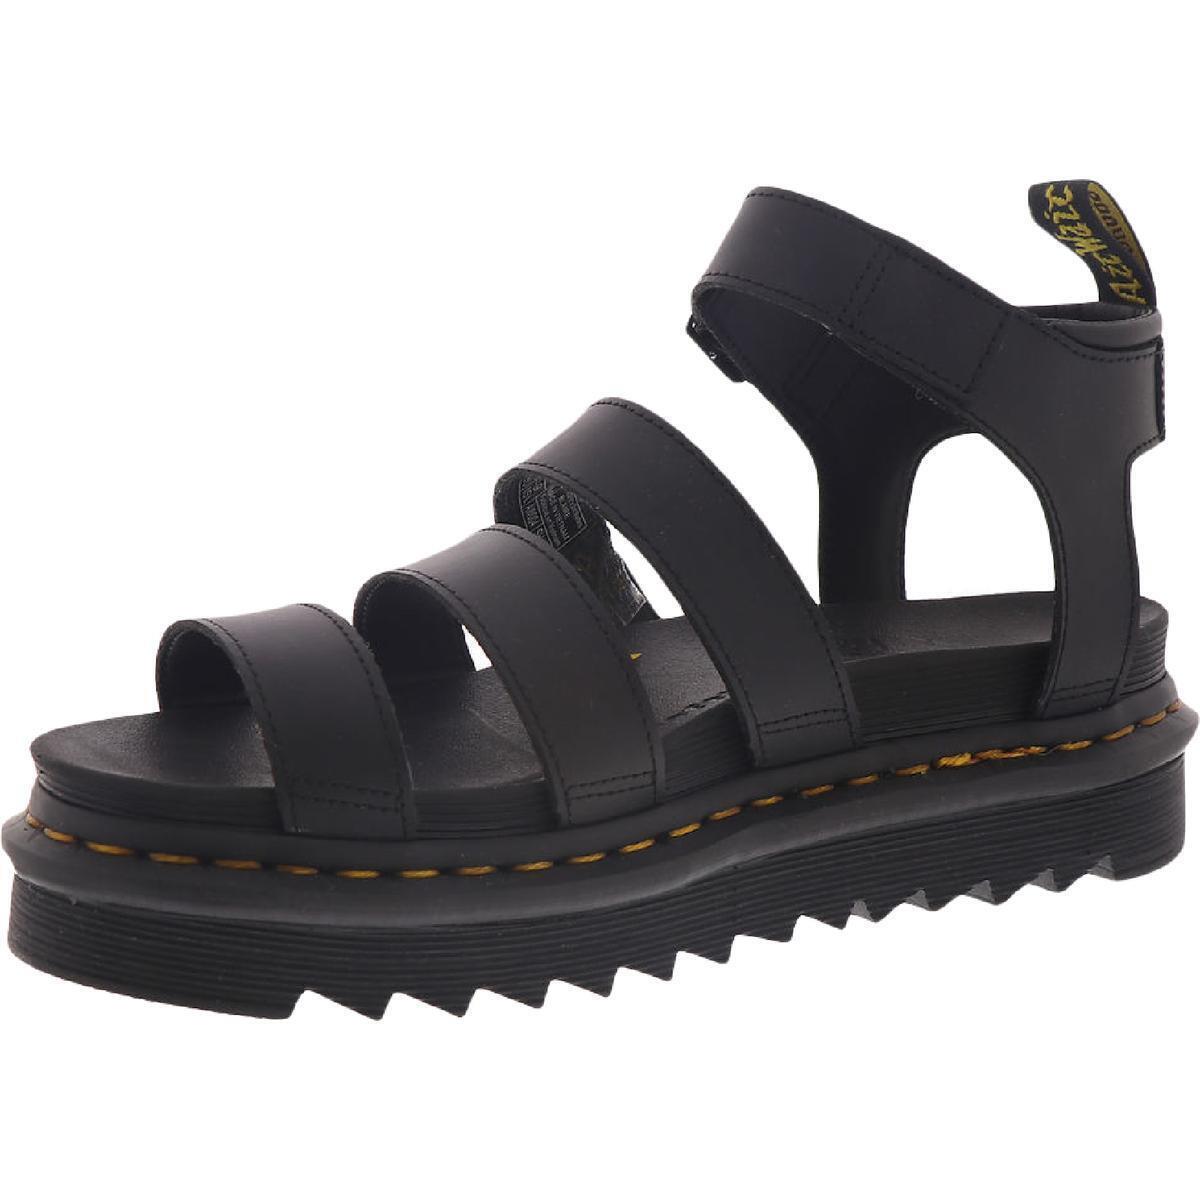 Dr. Martens Womens Blaire Black Platform Sandals Shoes 9 Medium B M Bhfo 7653